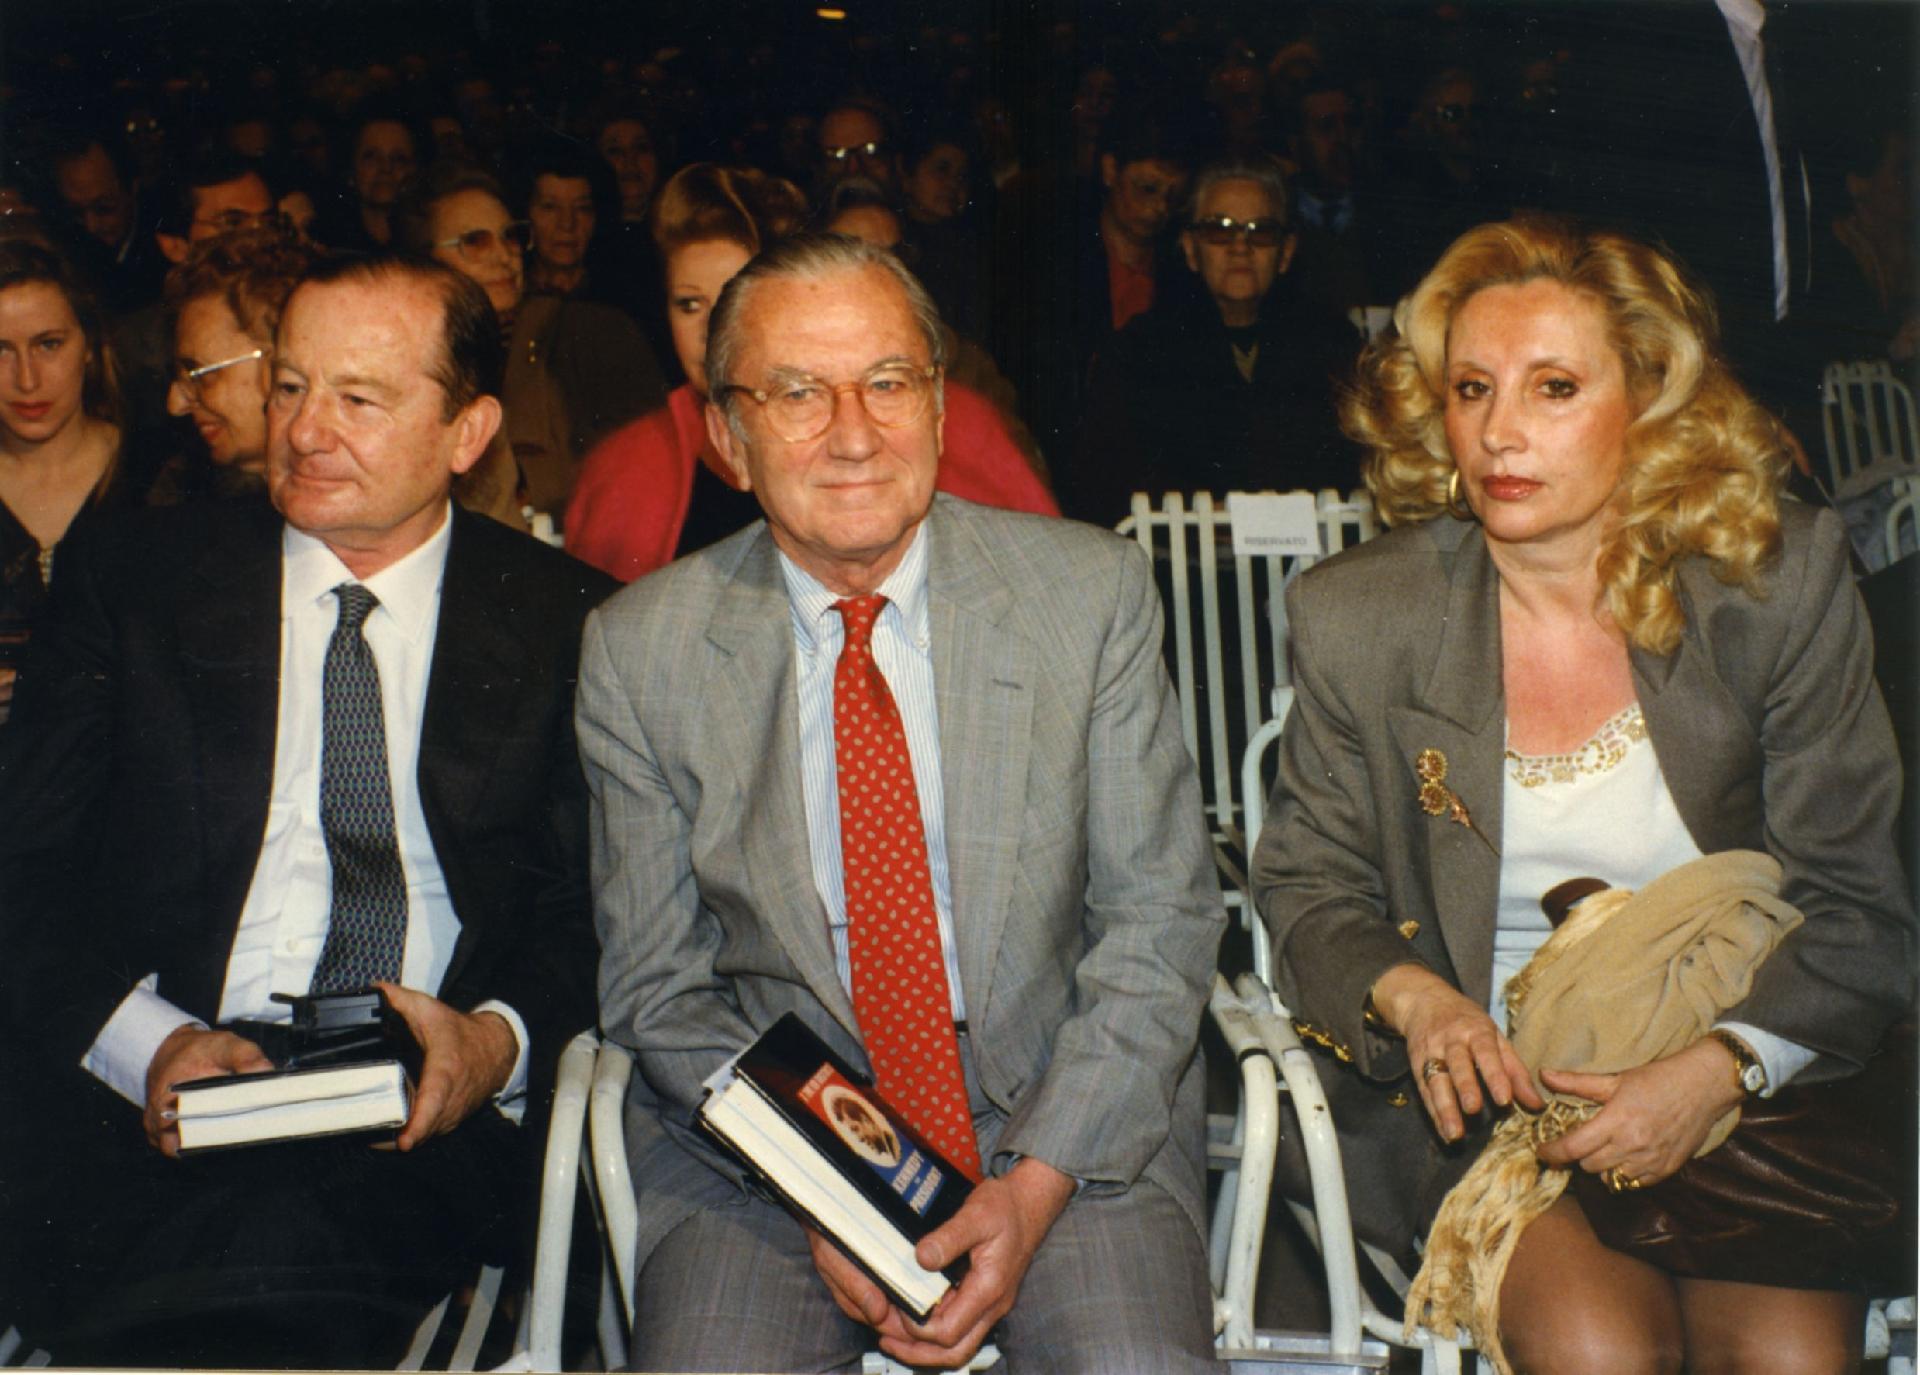 Gianni Bisiach con William Colby e Maria Grazia Avanzini alla presentazione del libro &quot;Il Presidente&quot; al Teatro Tenda e Strisce di Roma il 2 novembre 1990